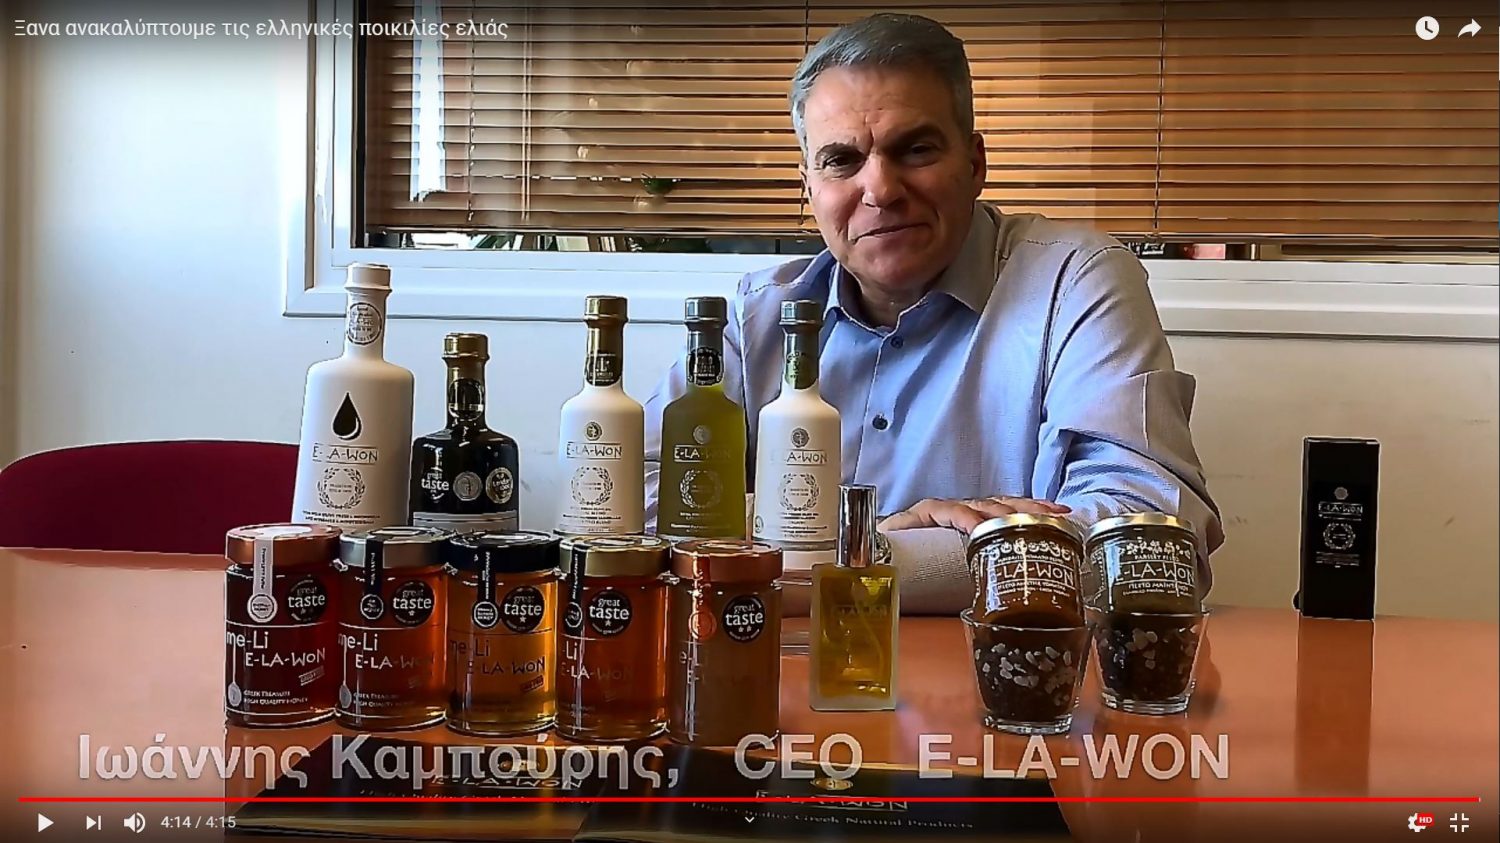 Γιάννης Καμπούρης: “Ξανα ανακαλύπτουμε τις ελληνικές ποικιλίες ελιάς”